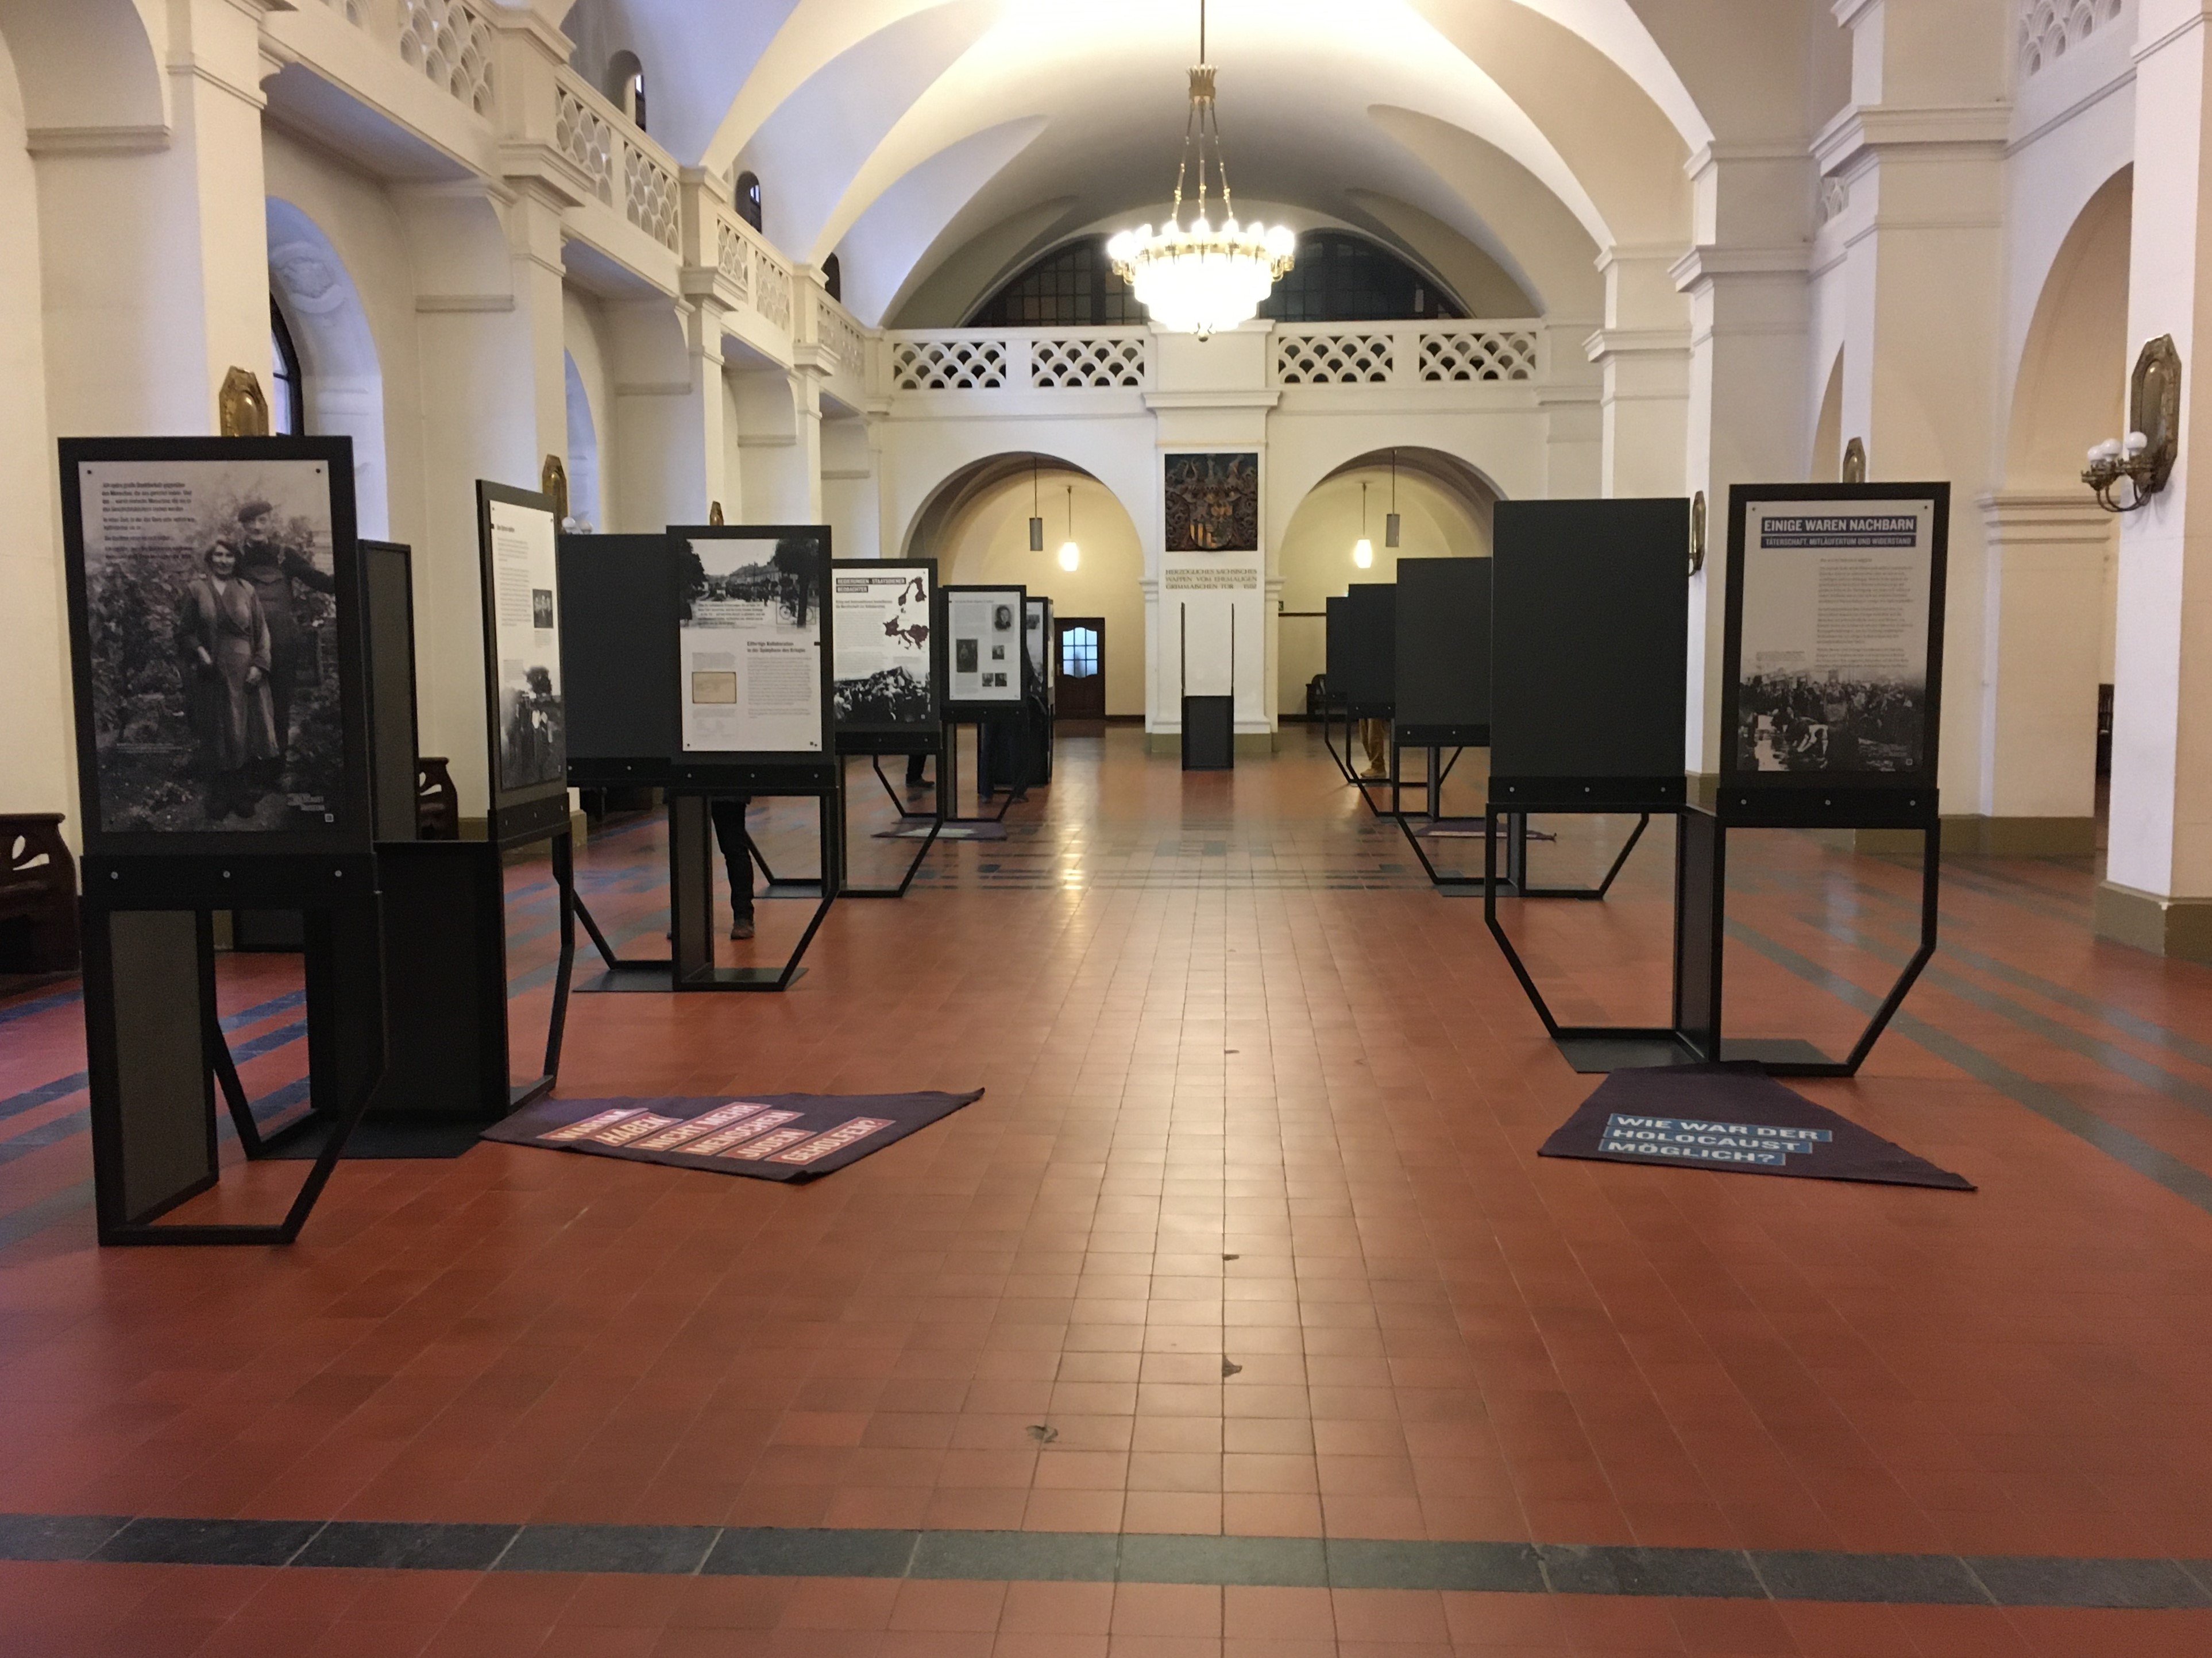   Vergessene Geschichten | Ausstellung im Neuen Rathaus zeigt Rolle der Bürger im Holocaust  